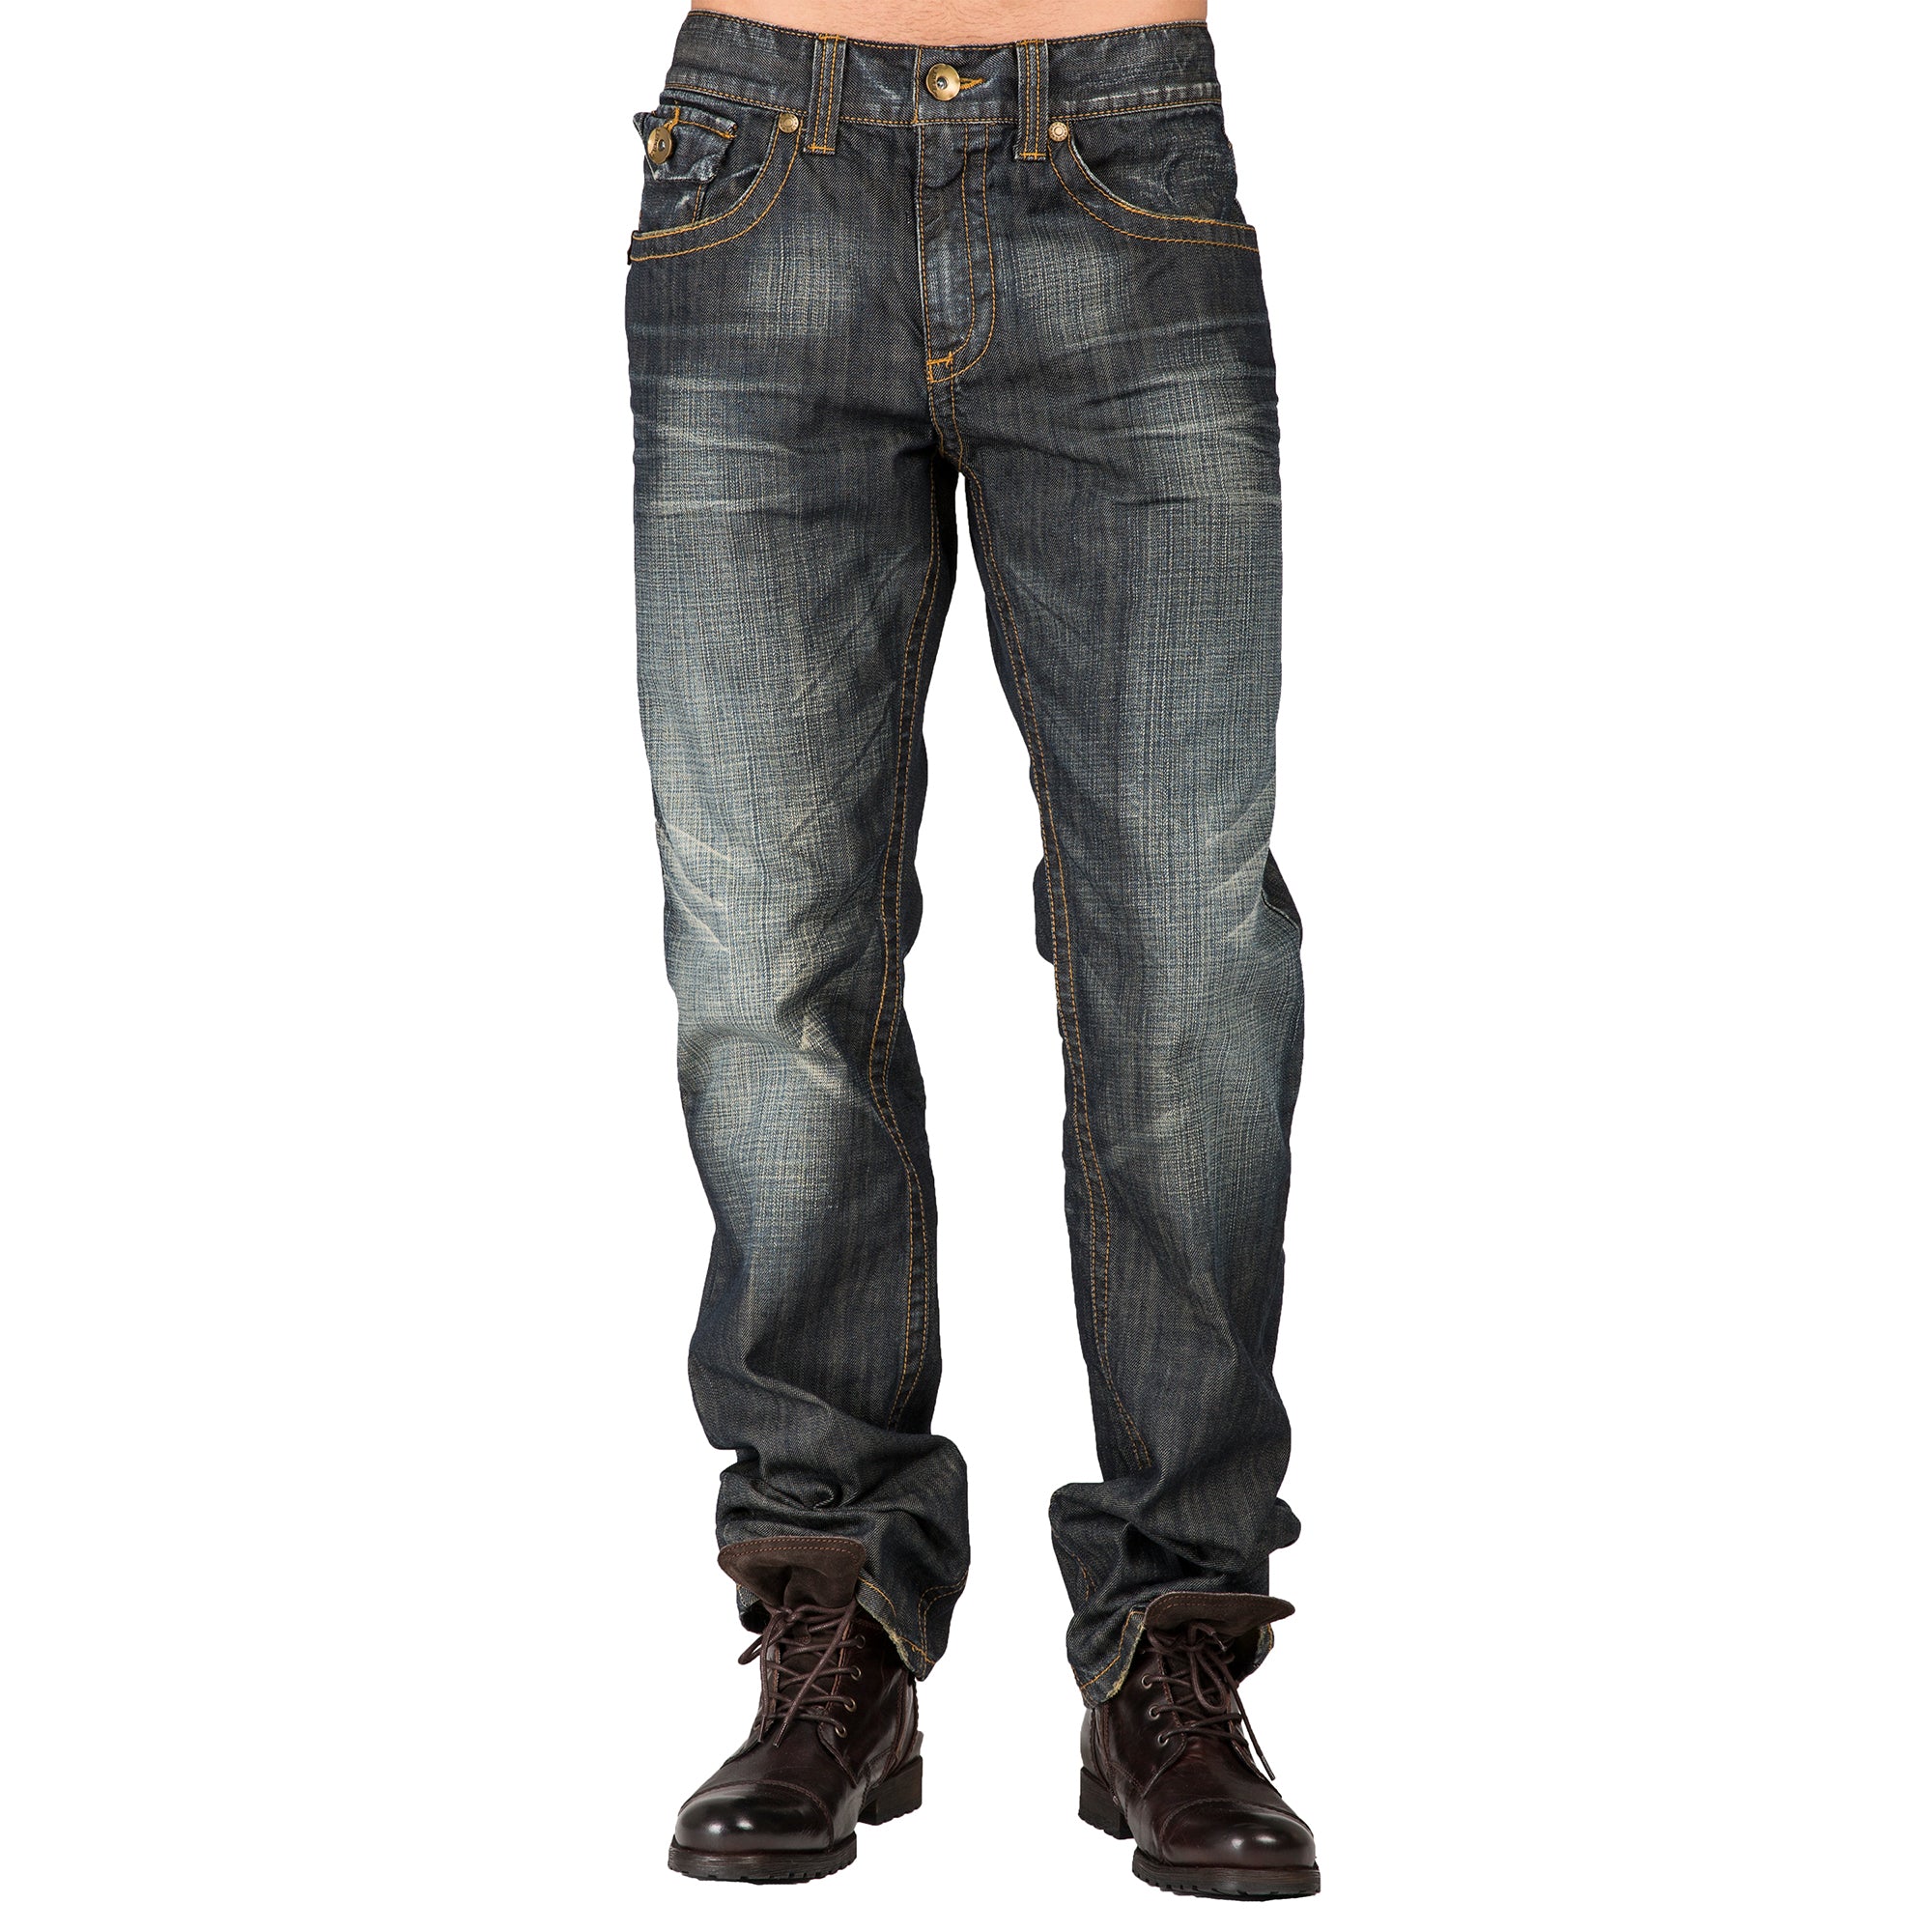 Level 7 Men's Relaxed Straight Leg Premium Denim Jeans